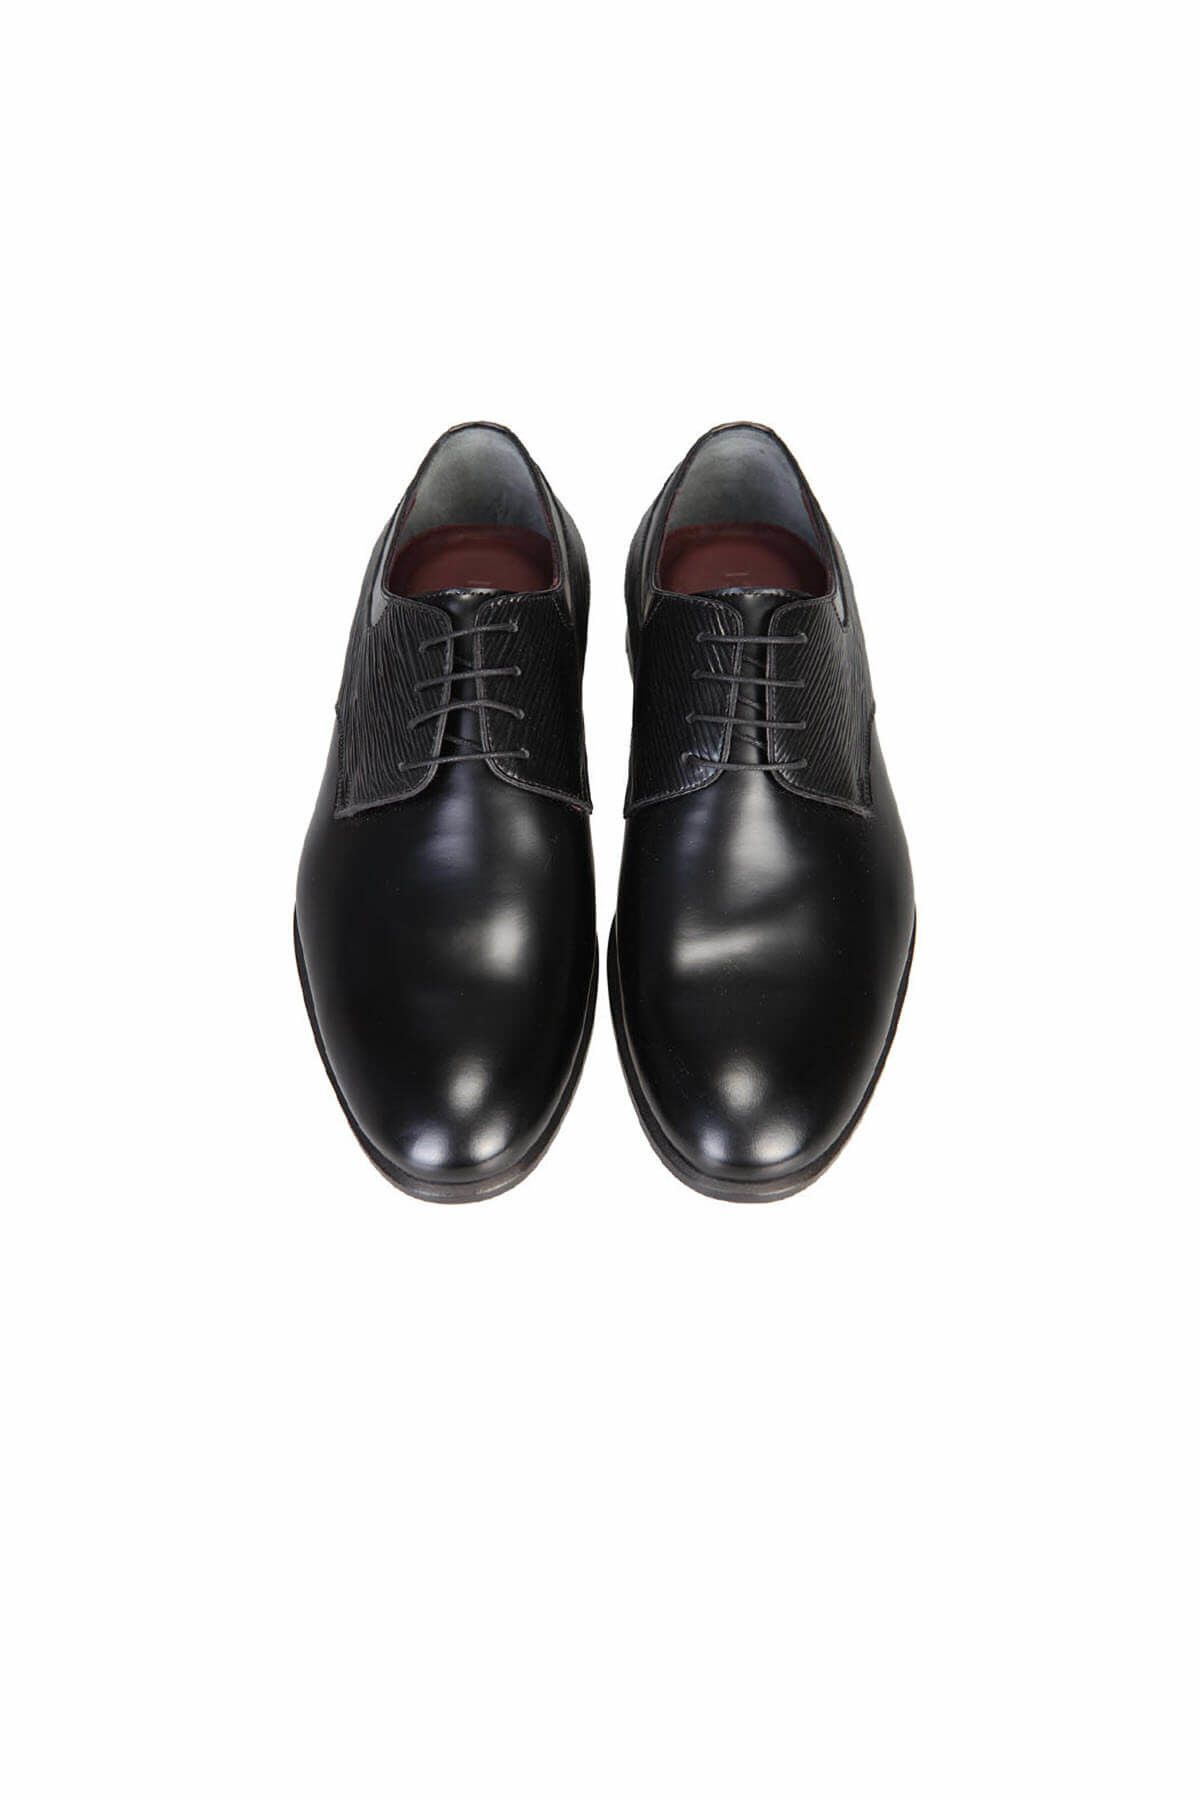 Kip Klasik Ayakkabı-10071555